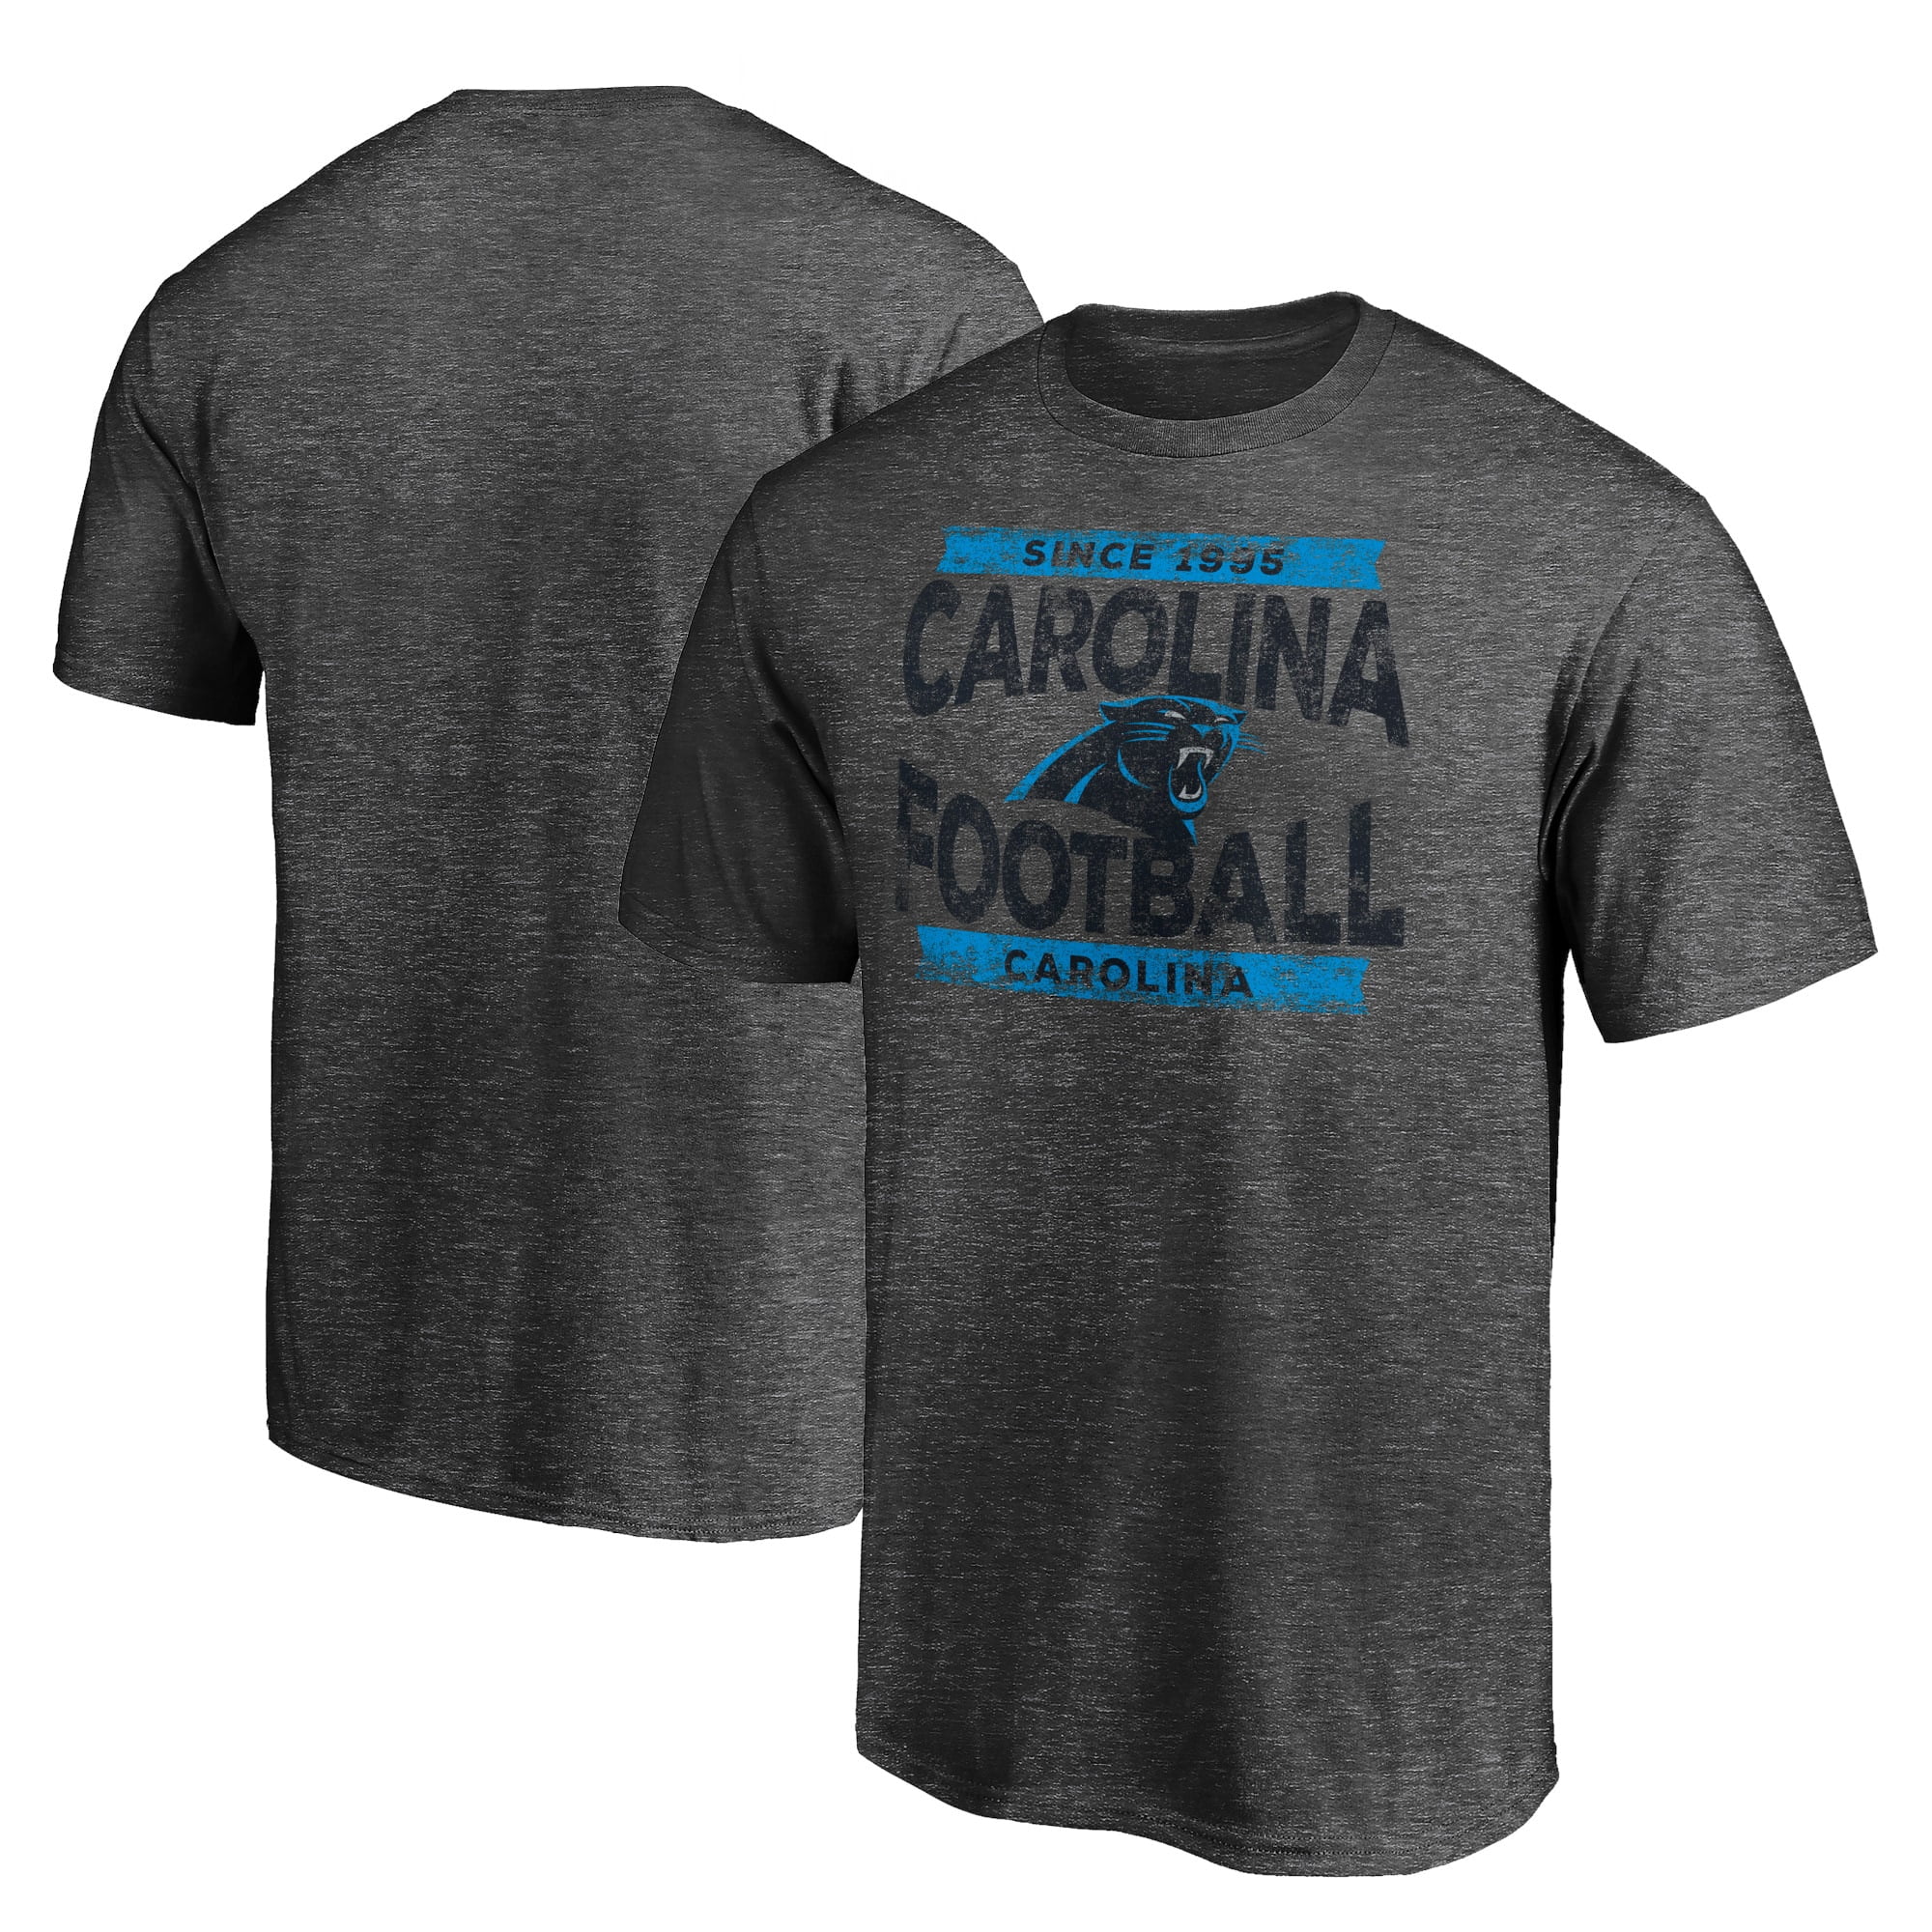 Carolina Panthers T-Shirts